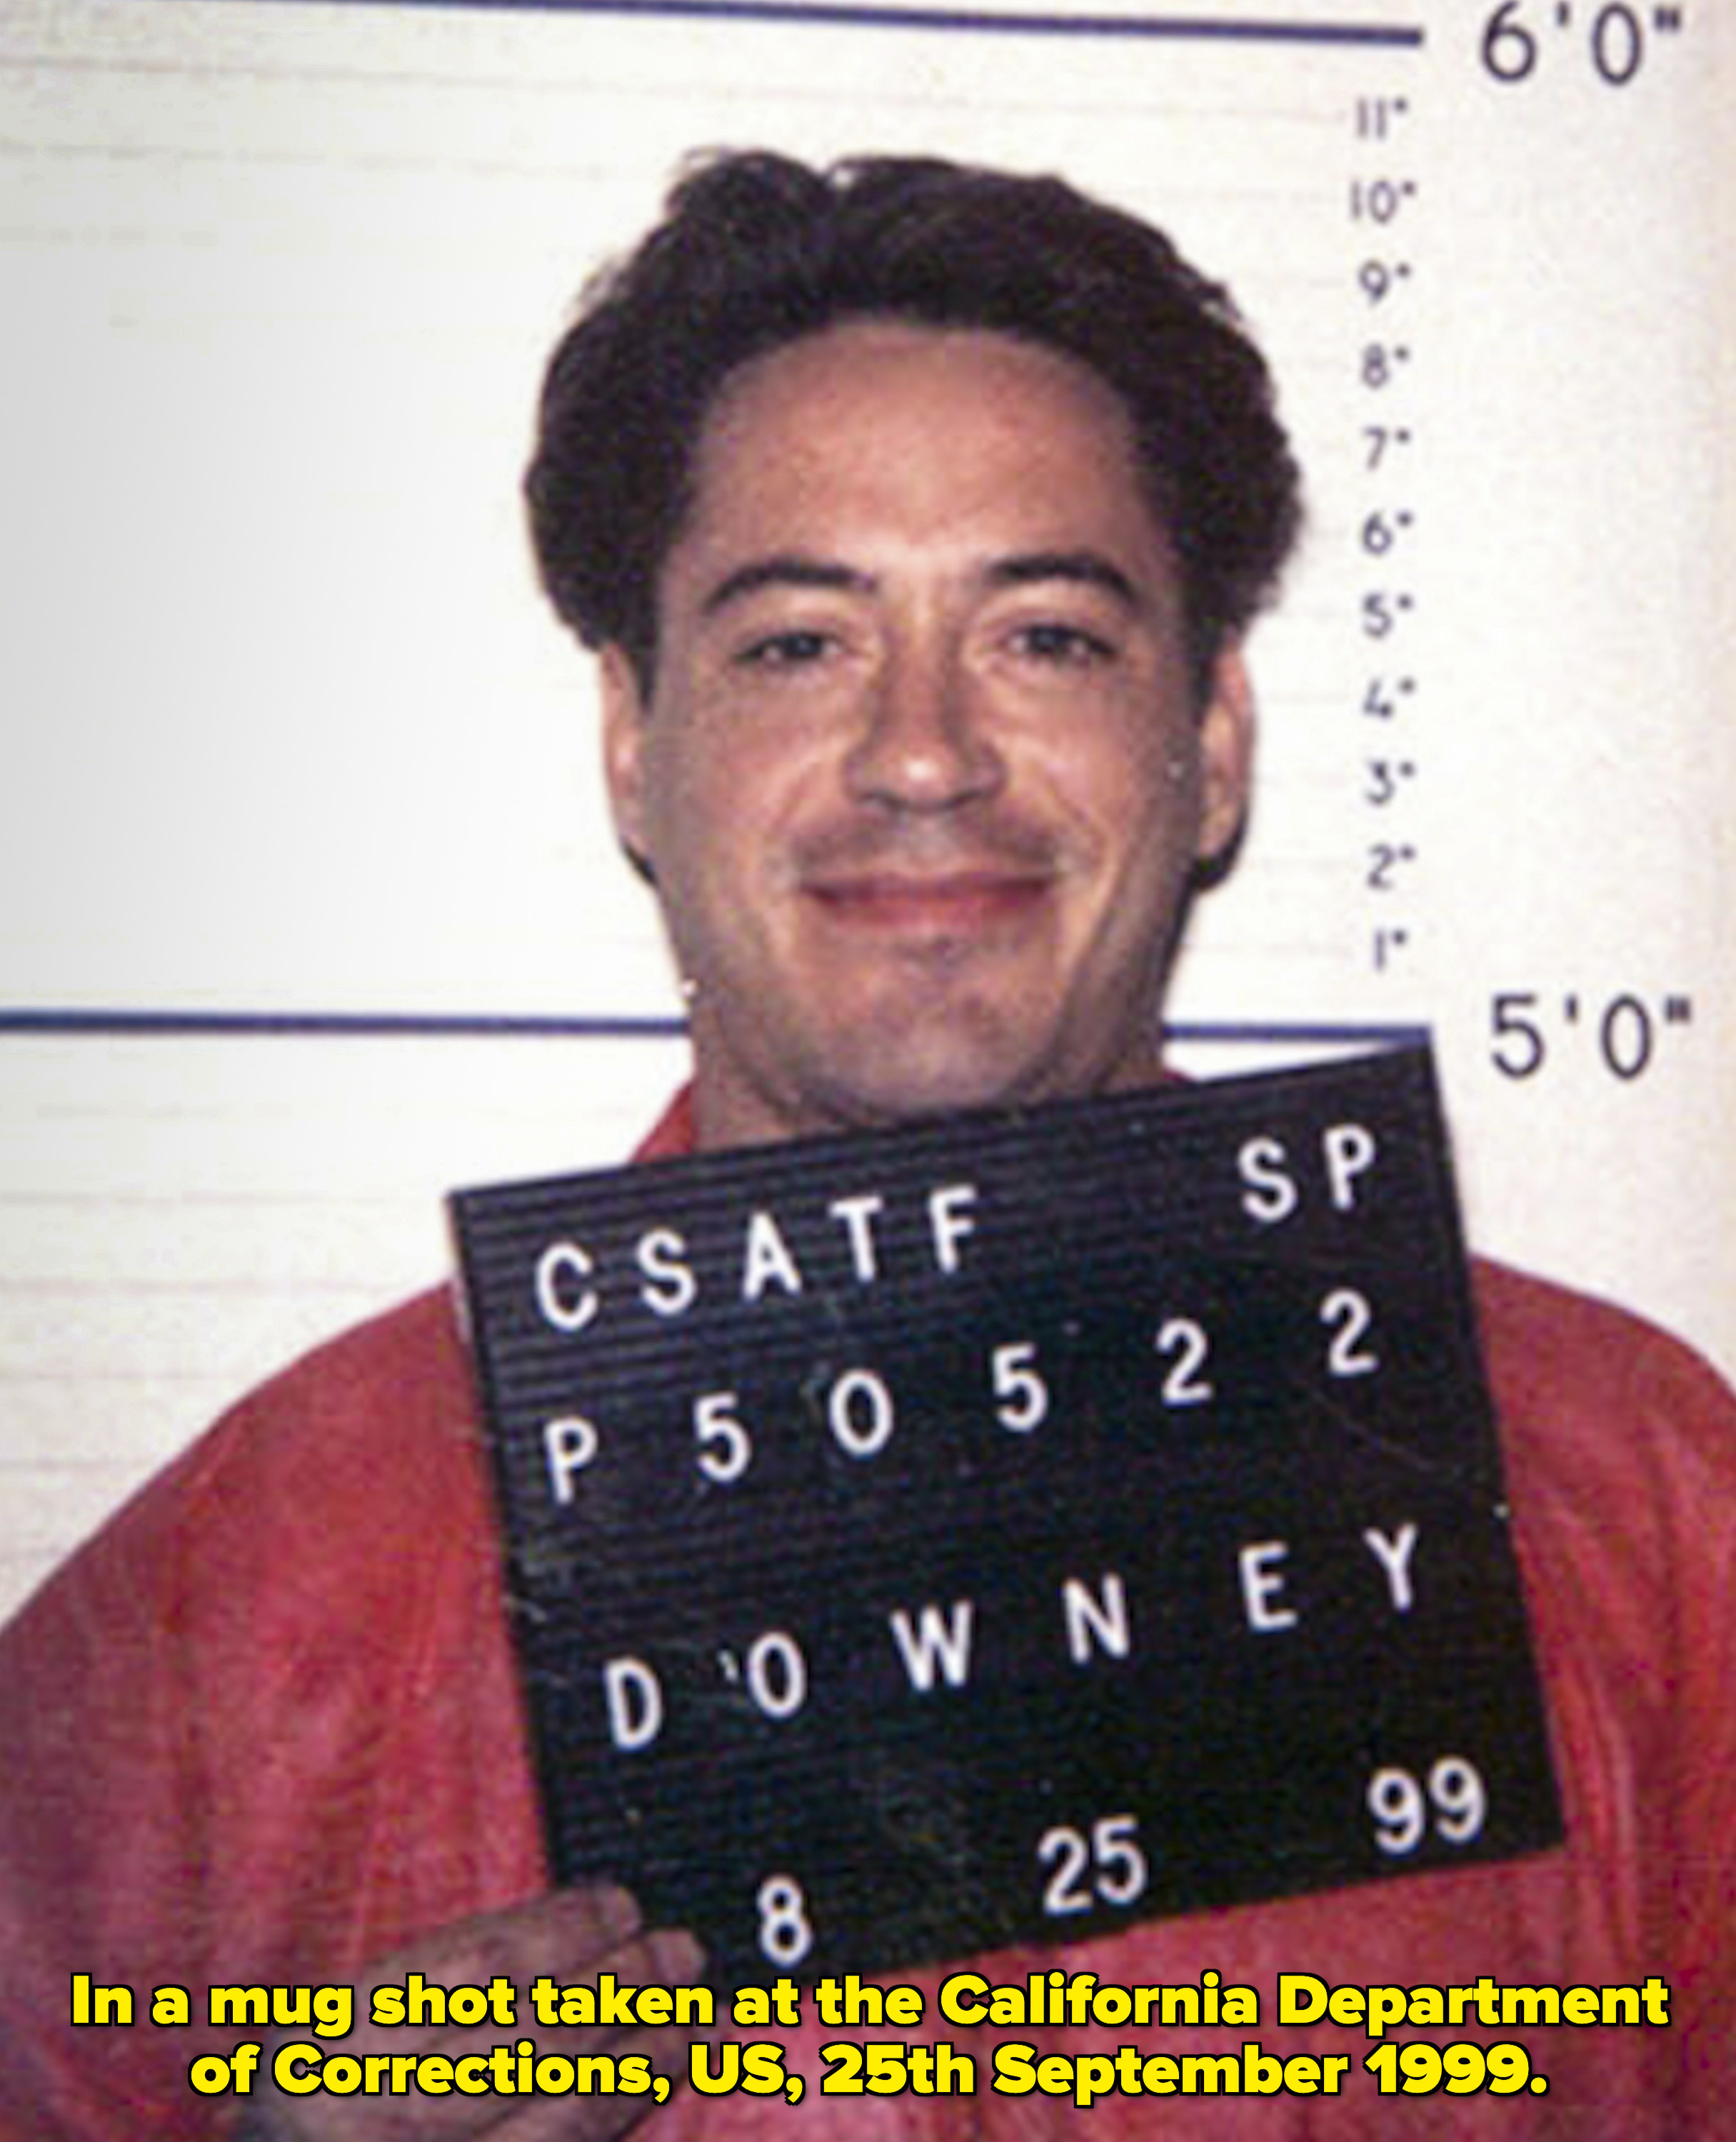 Robert Downey Jr smiling in his mugshot